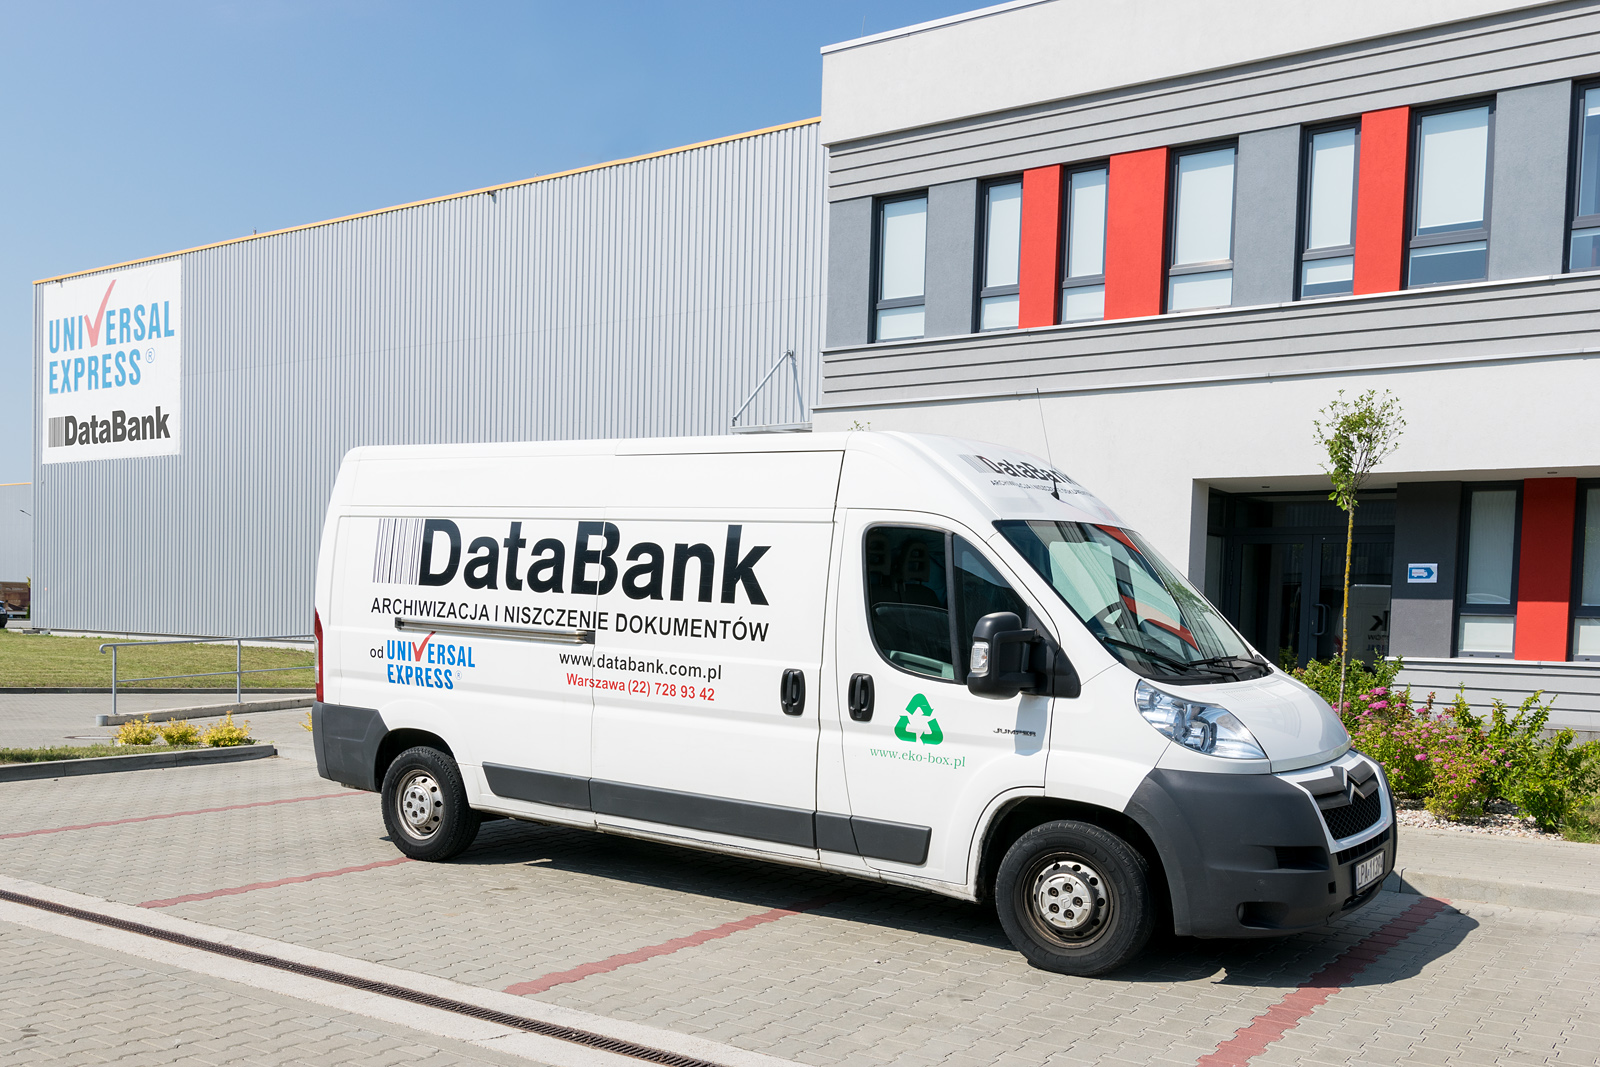 DataBank archiwizacja dokumentów, siedziba firmy